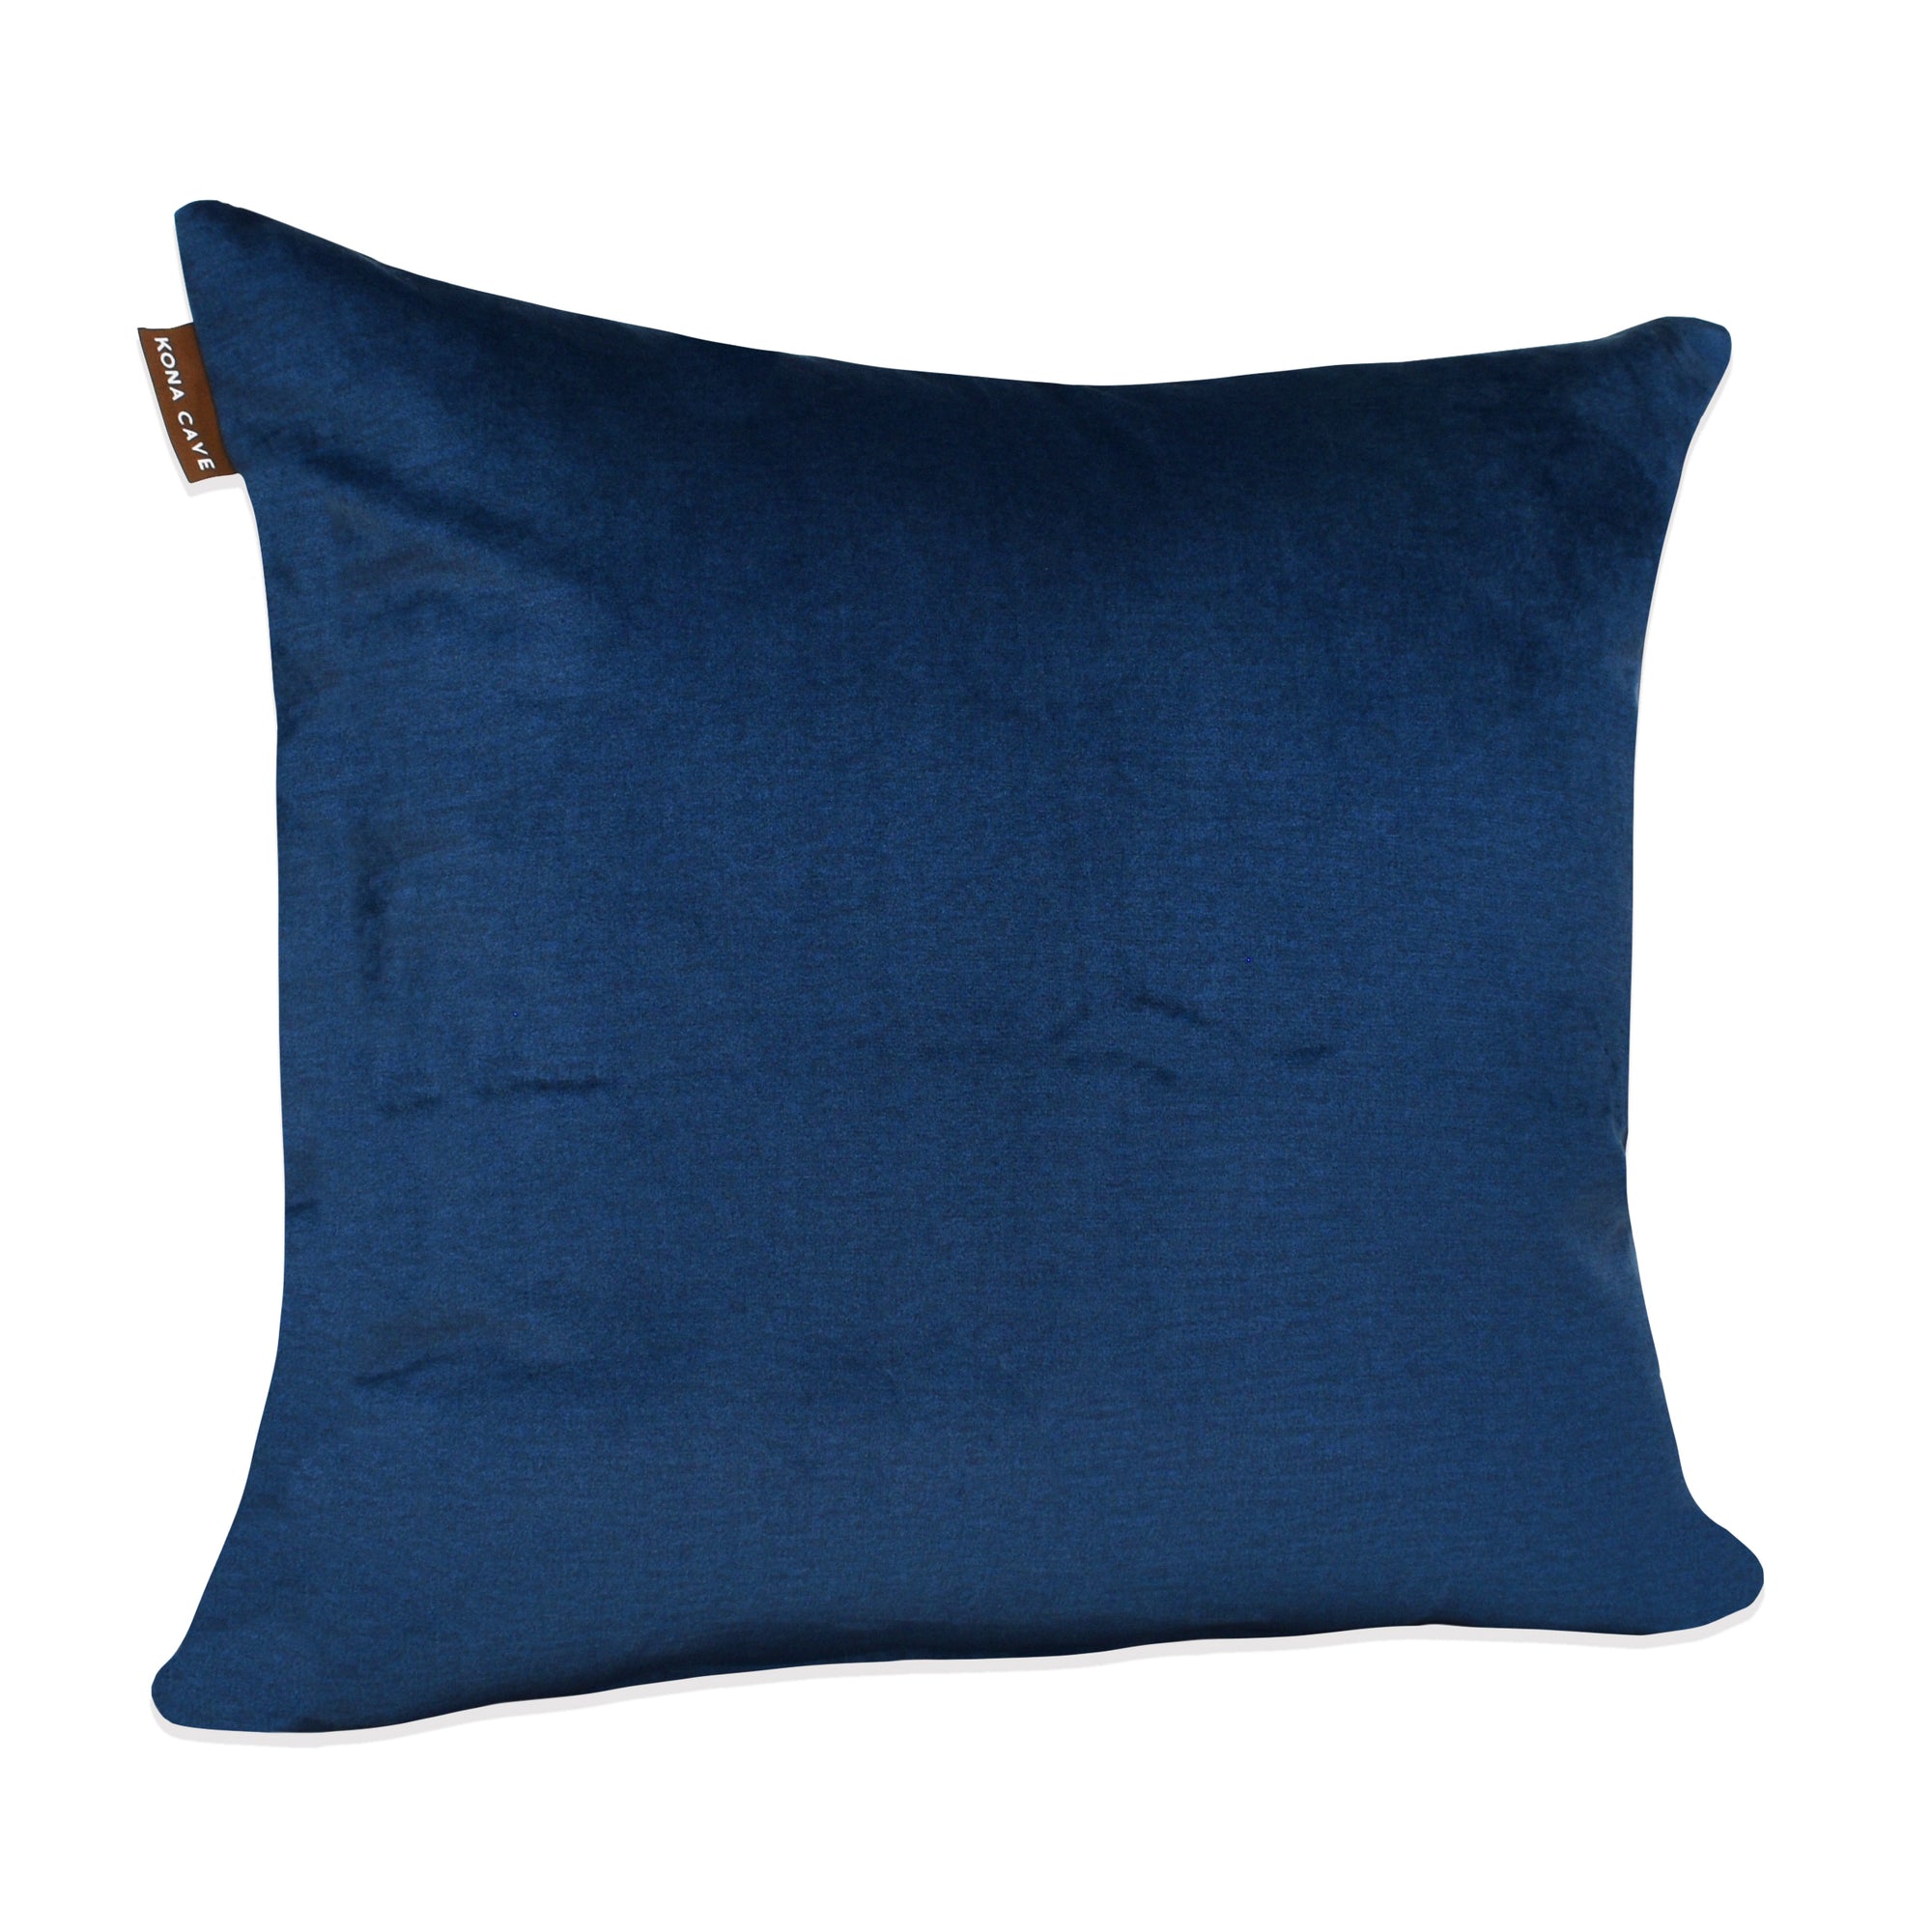 Decorative Pillow Cover - Midnight Blue Velvet